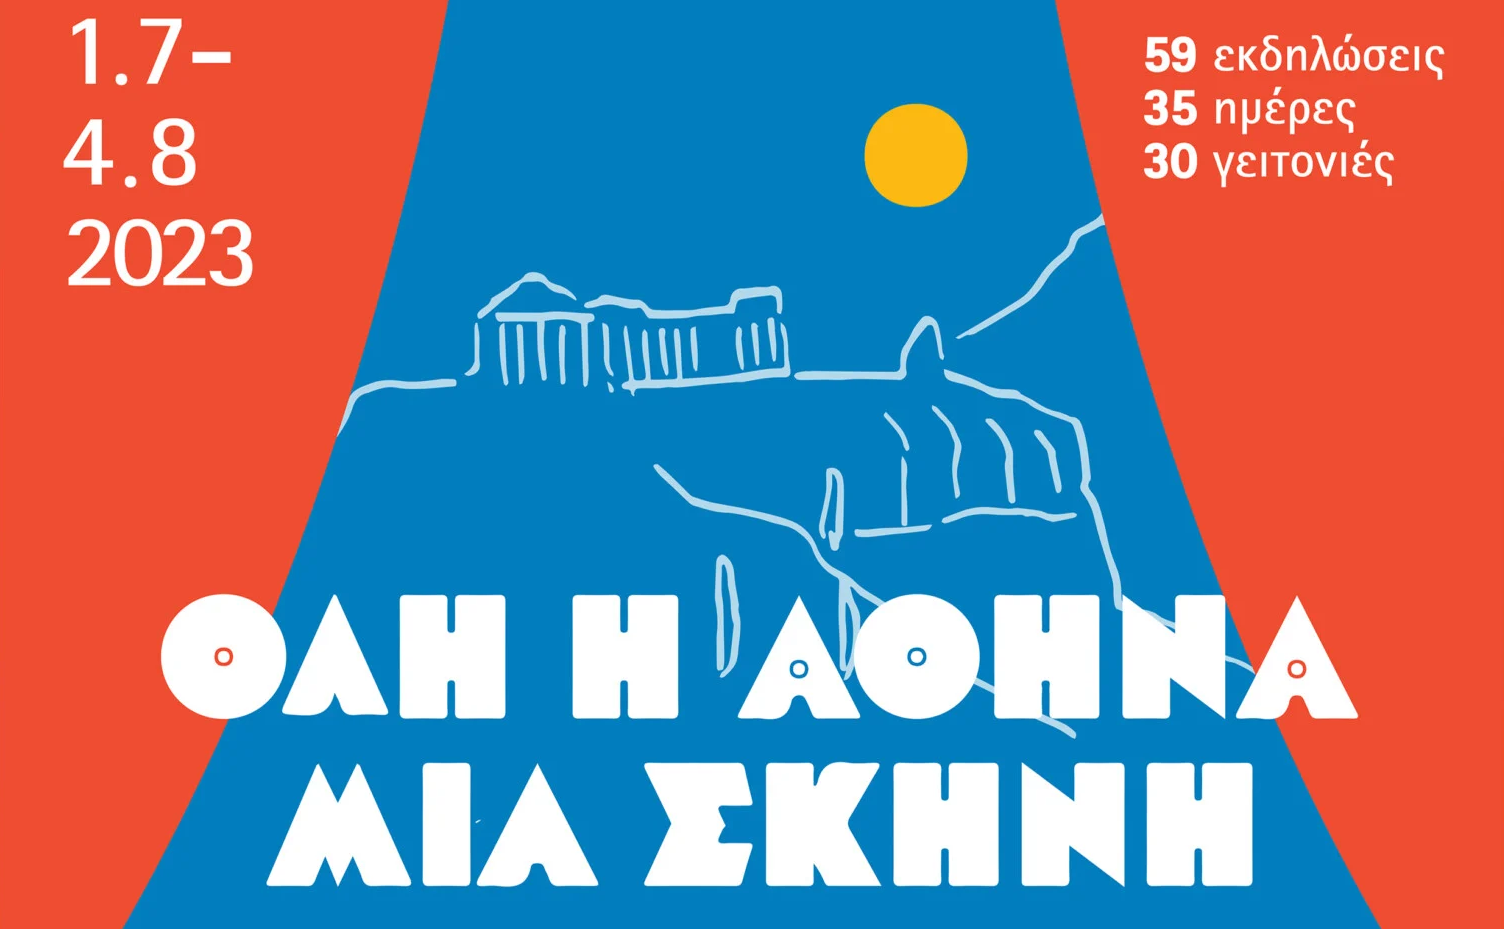 Όλη η Αθήνα μία Σκηνή: Οι εκδηλώσεις της εβδομάδας 17 – 23 Ιουλίου 2023